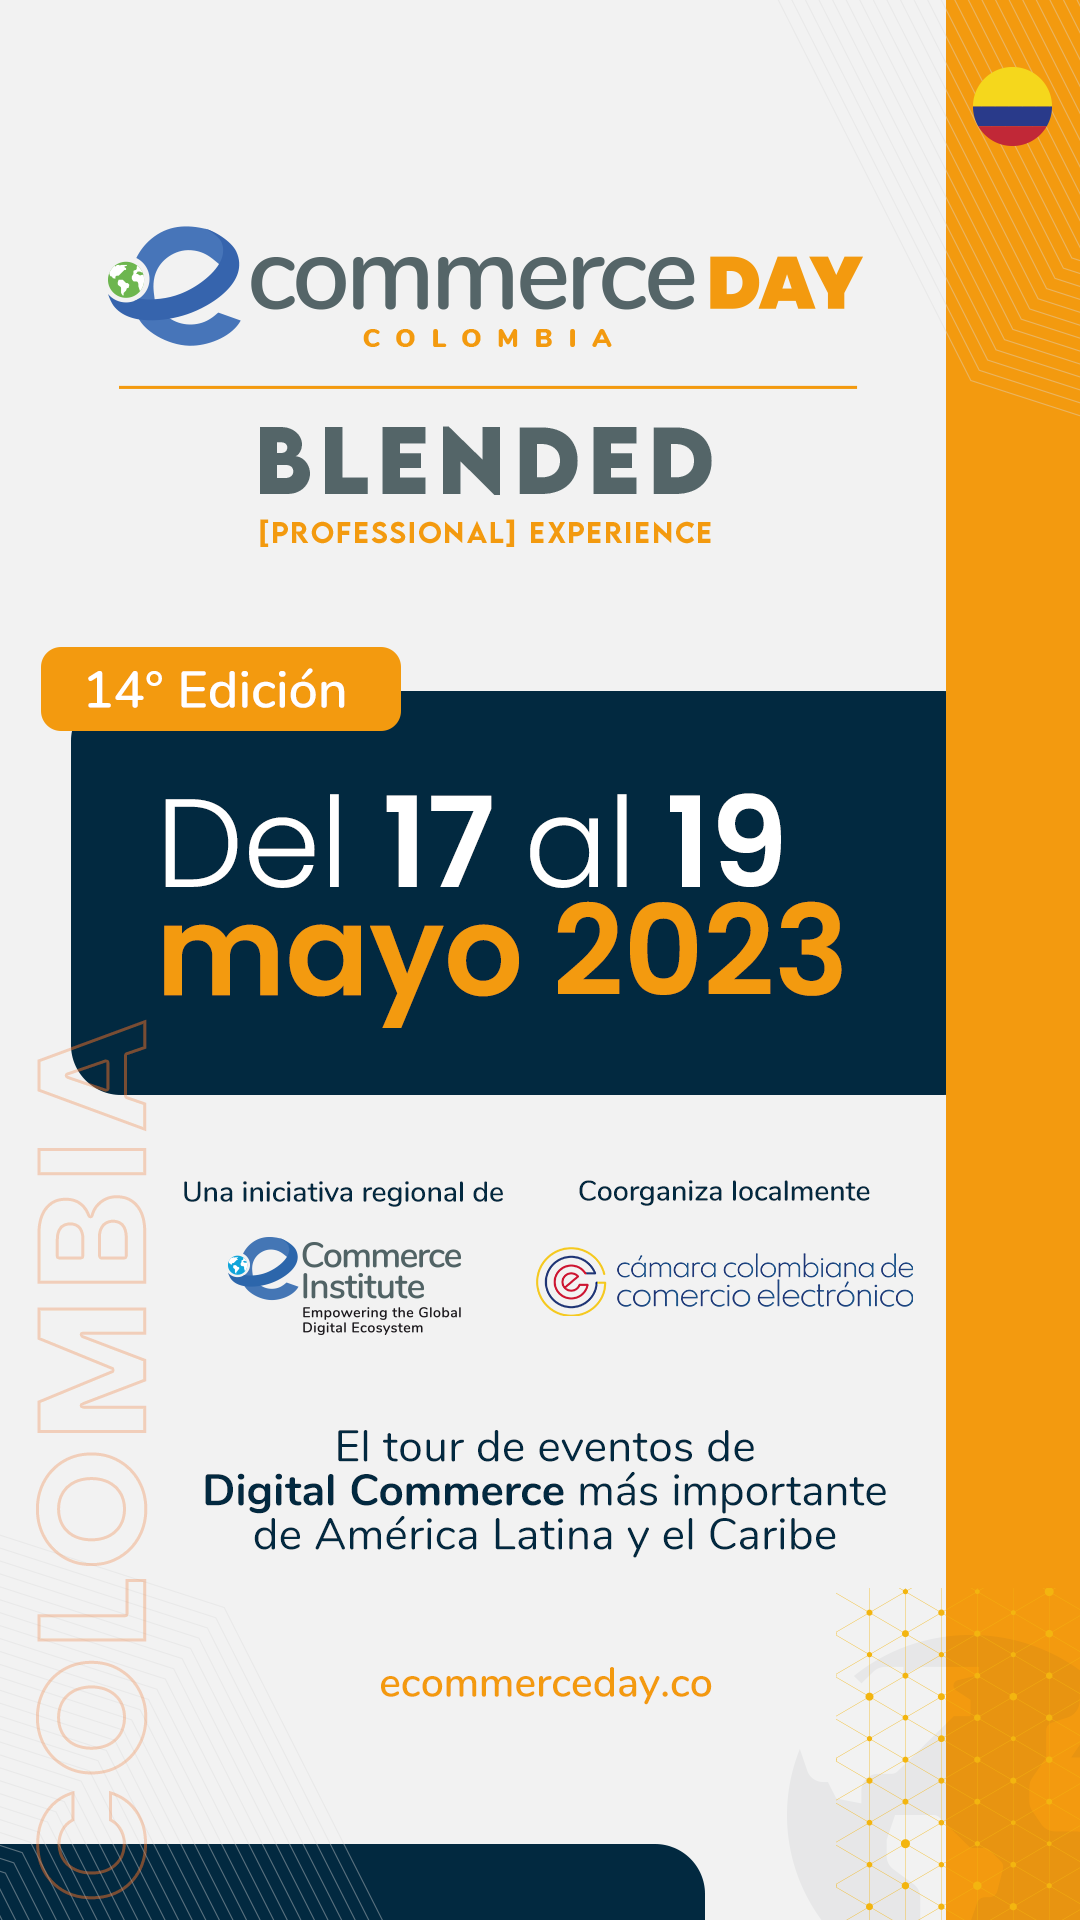 eCommerce Day Colombia regresa este 17 de mayo